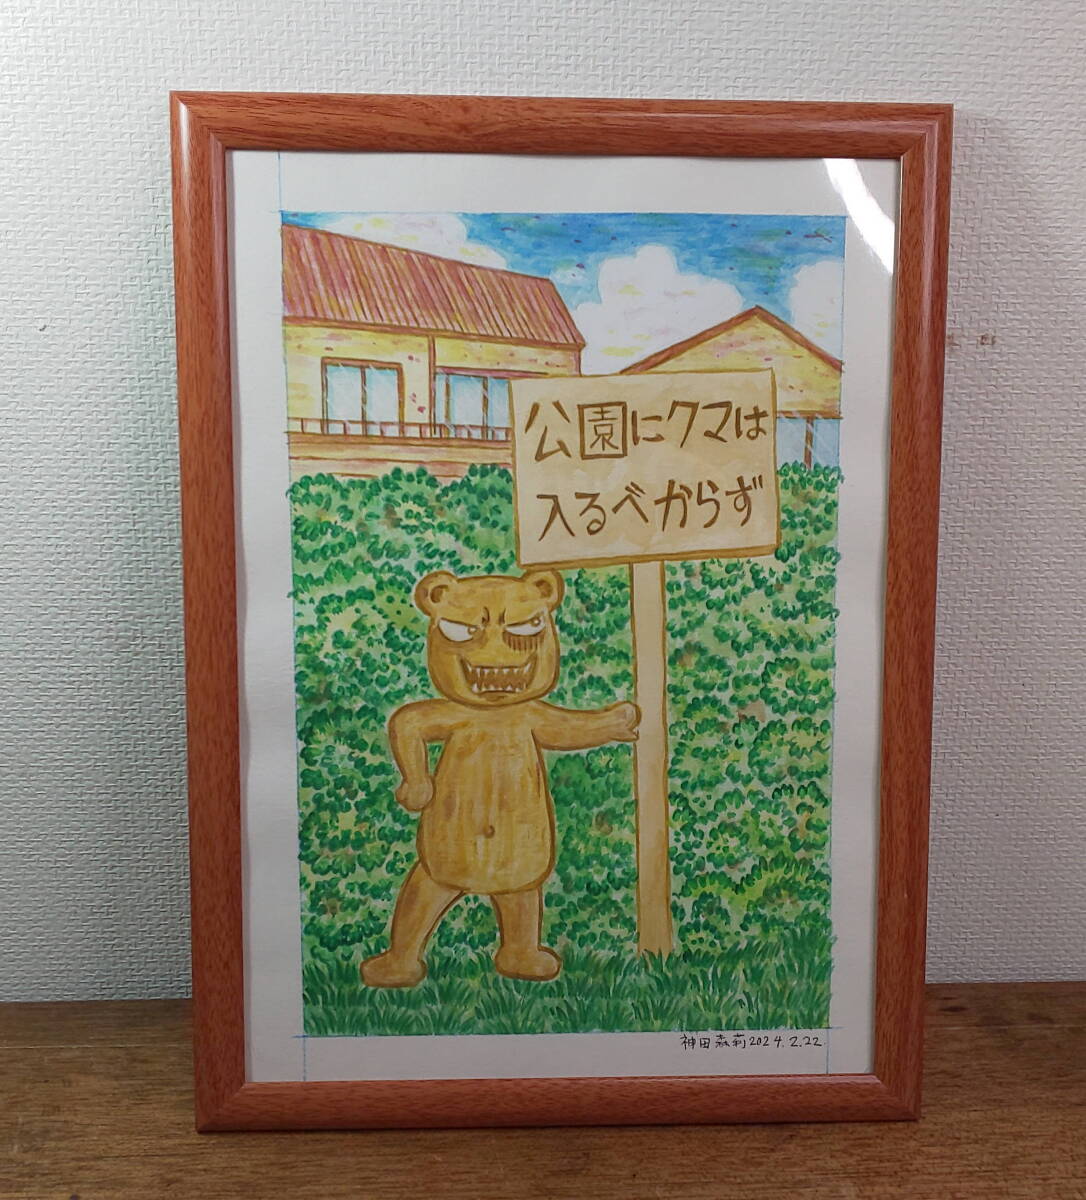 【图鉴】熊不该进入公园【恐怖漫画家神田森】签名, 漫画, 动漫周边, 符号, 手绘绘画